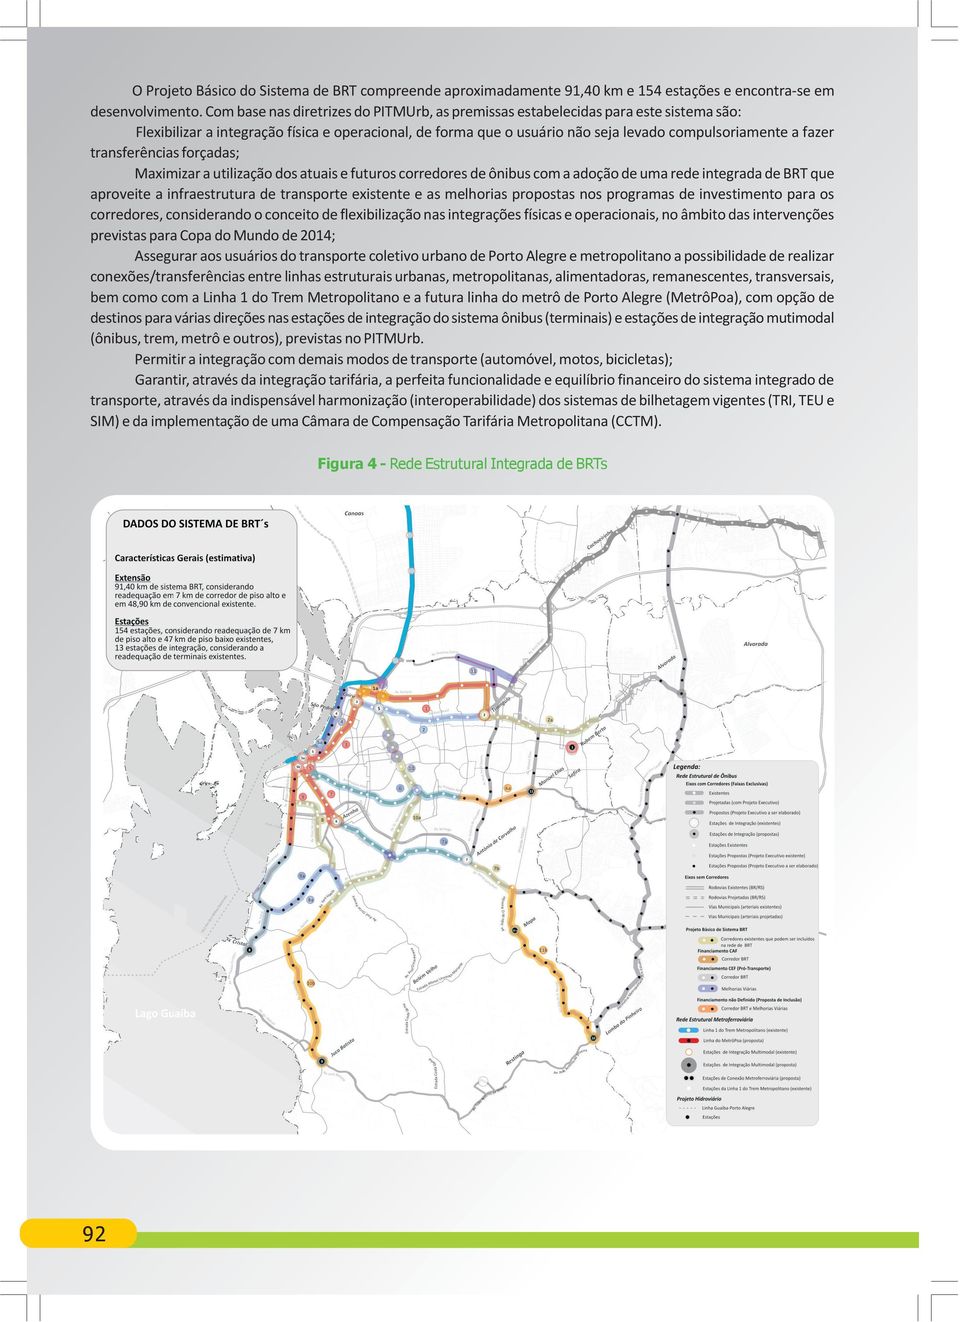 transferências forçadas; Maximizar a utilização dos atuais e futuros corredores de ônibus com a adoção de uma rede integrada de BRT que aproveite a infraestrutura de transporte existente e as